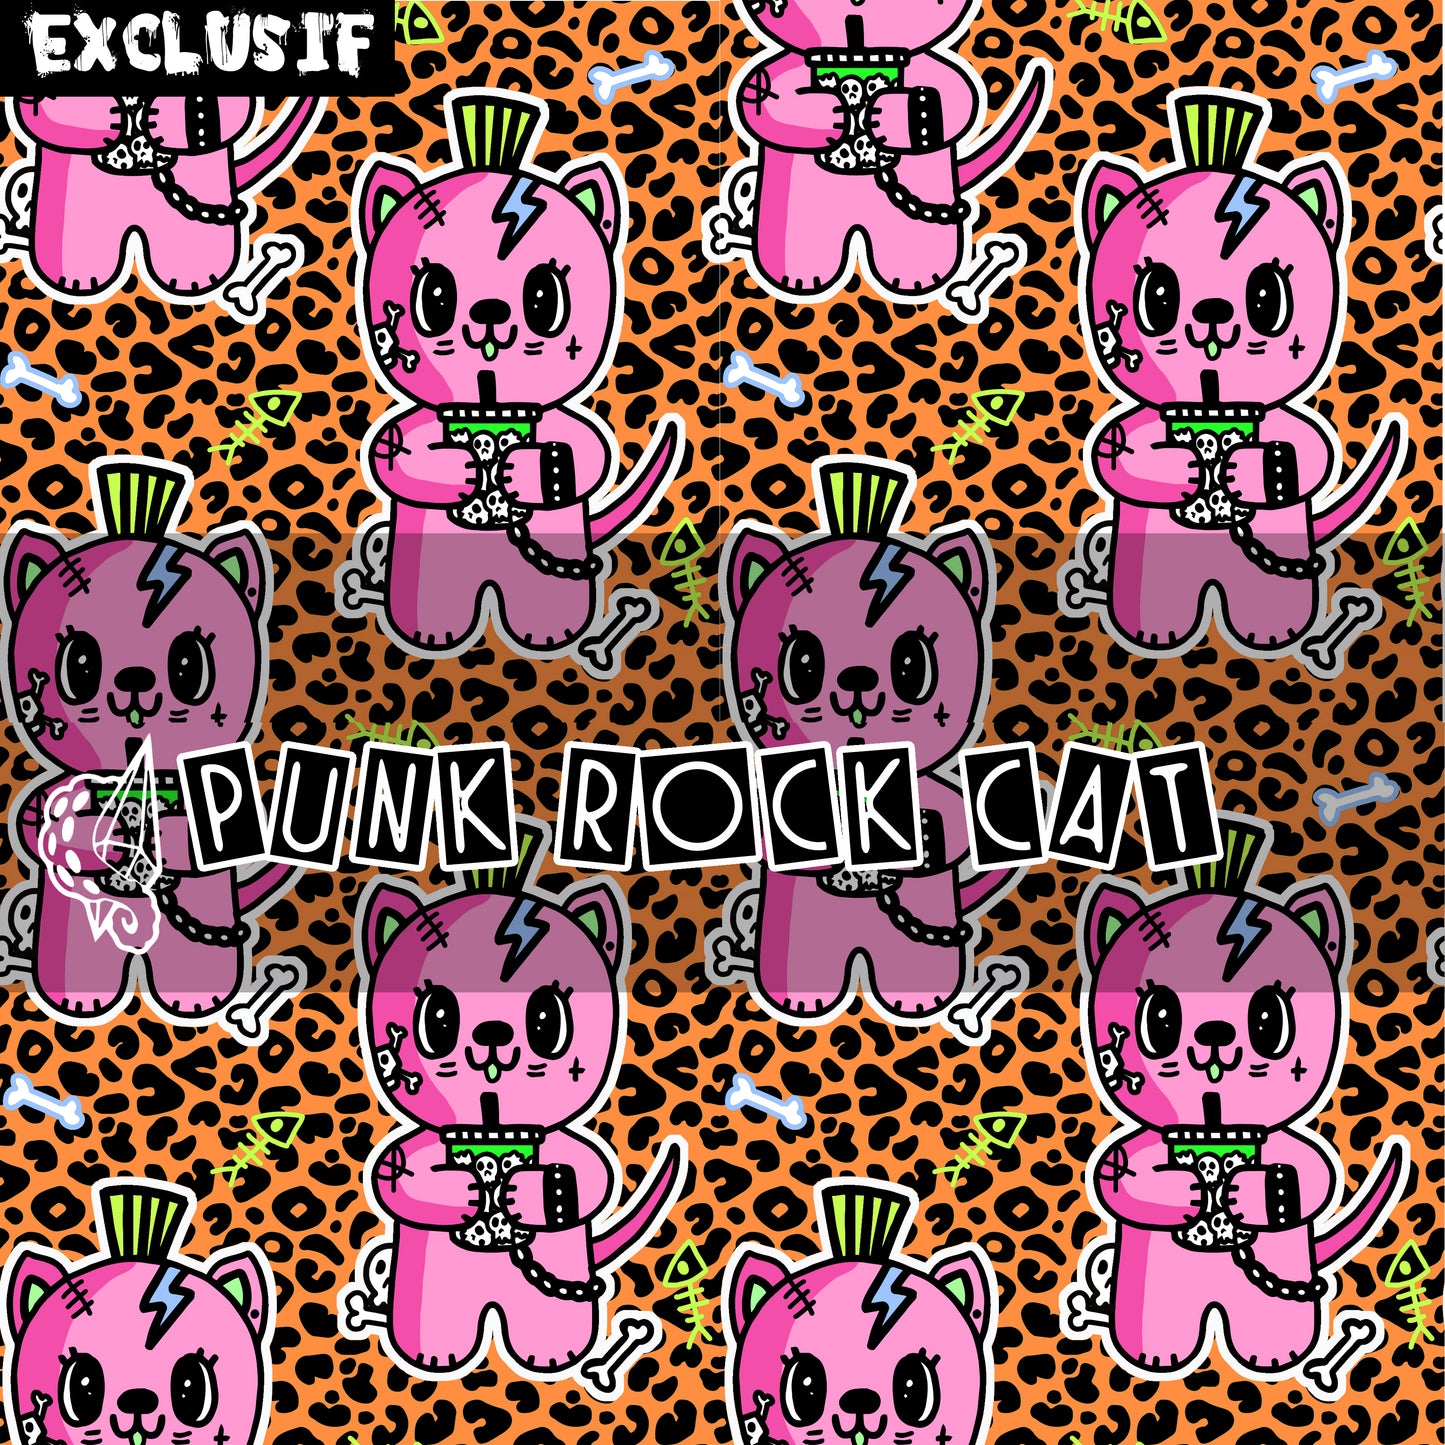 Punk Rock Cat